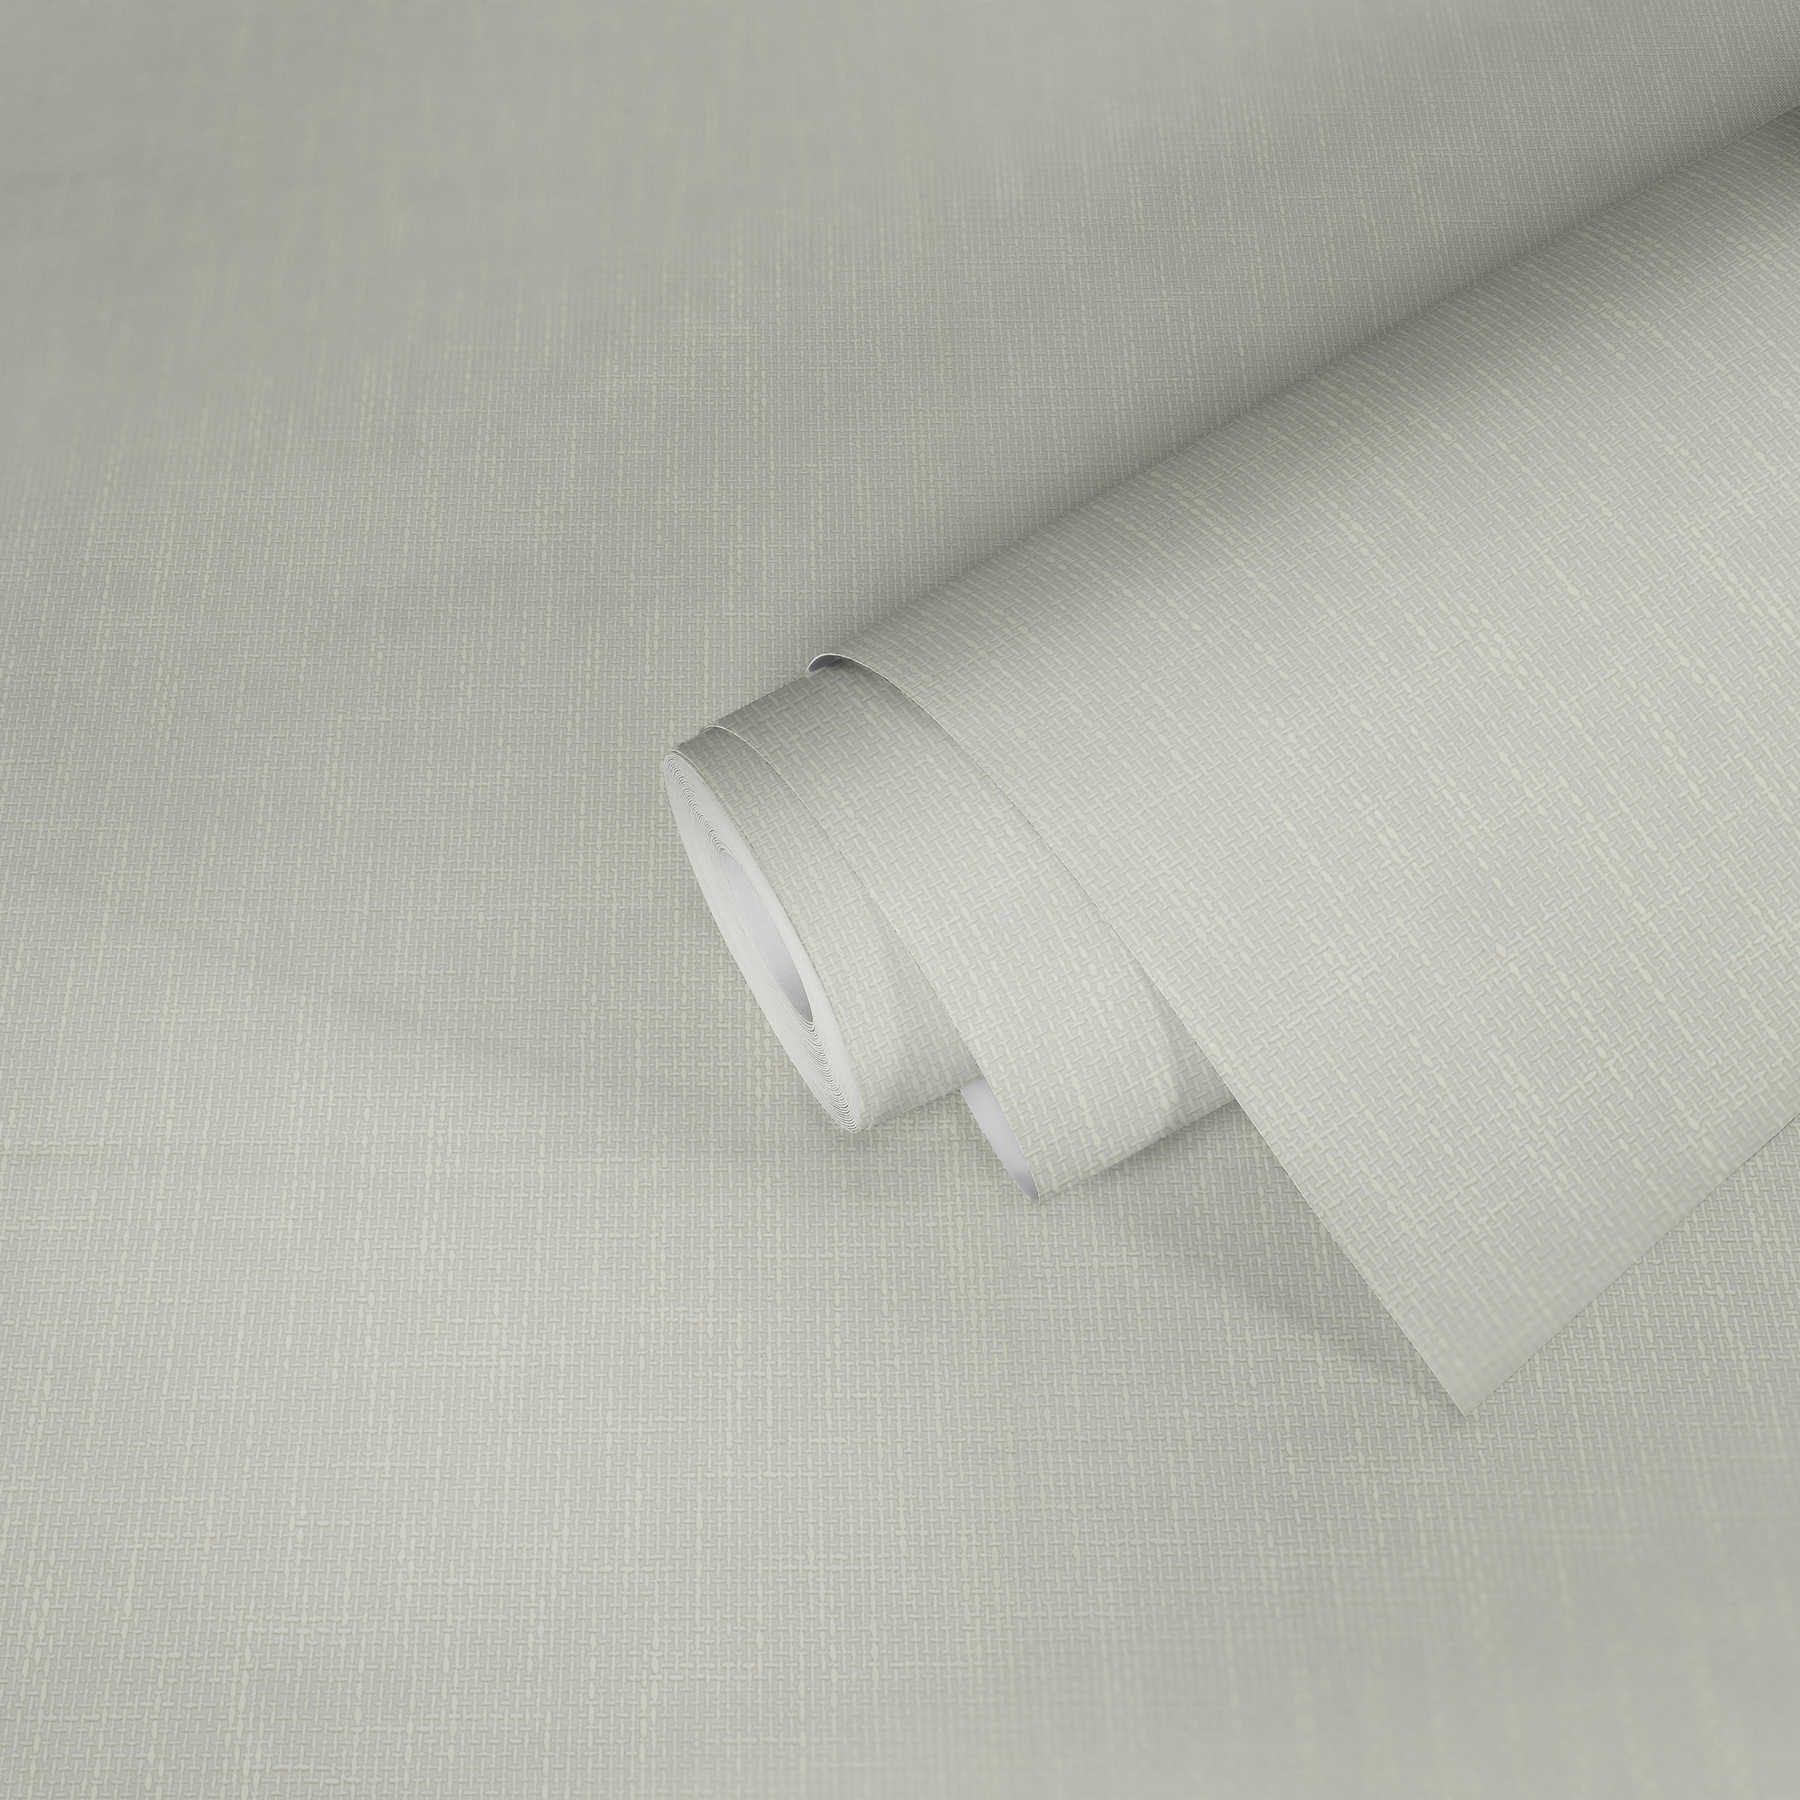             Papel pintado perfilado con estructura de tela en aspecto de lino - blanco
        